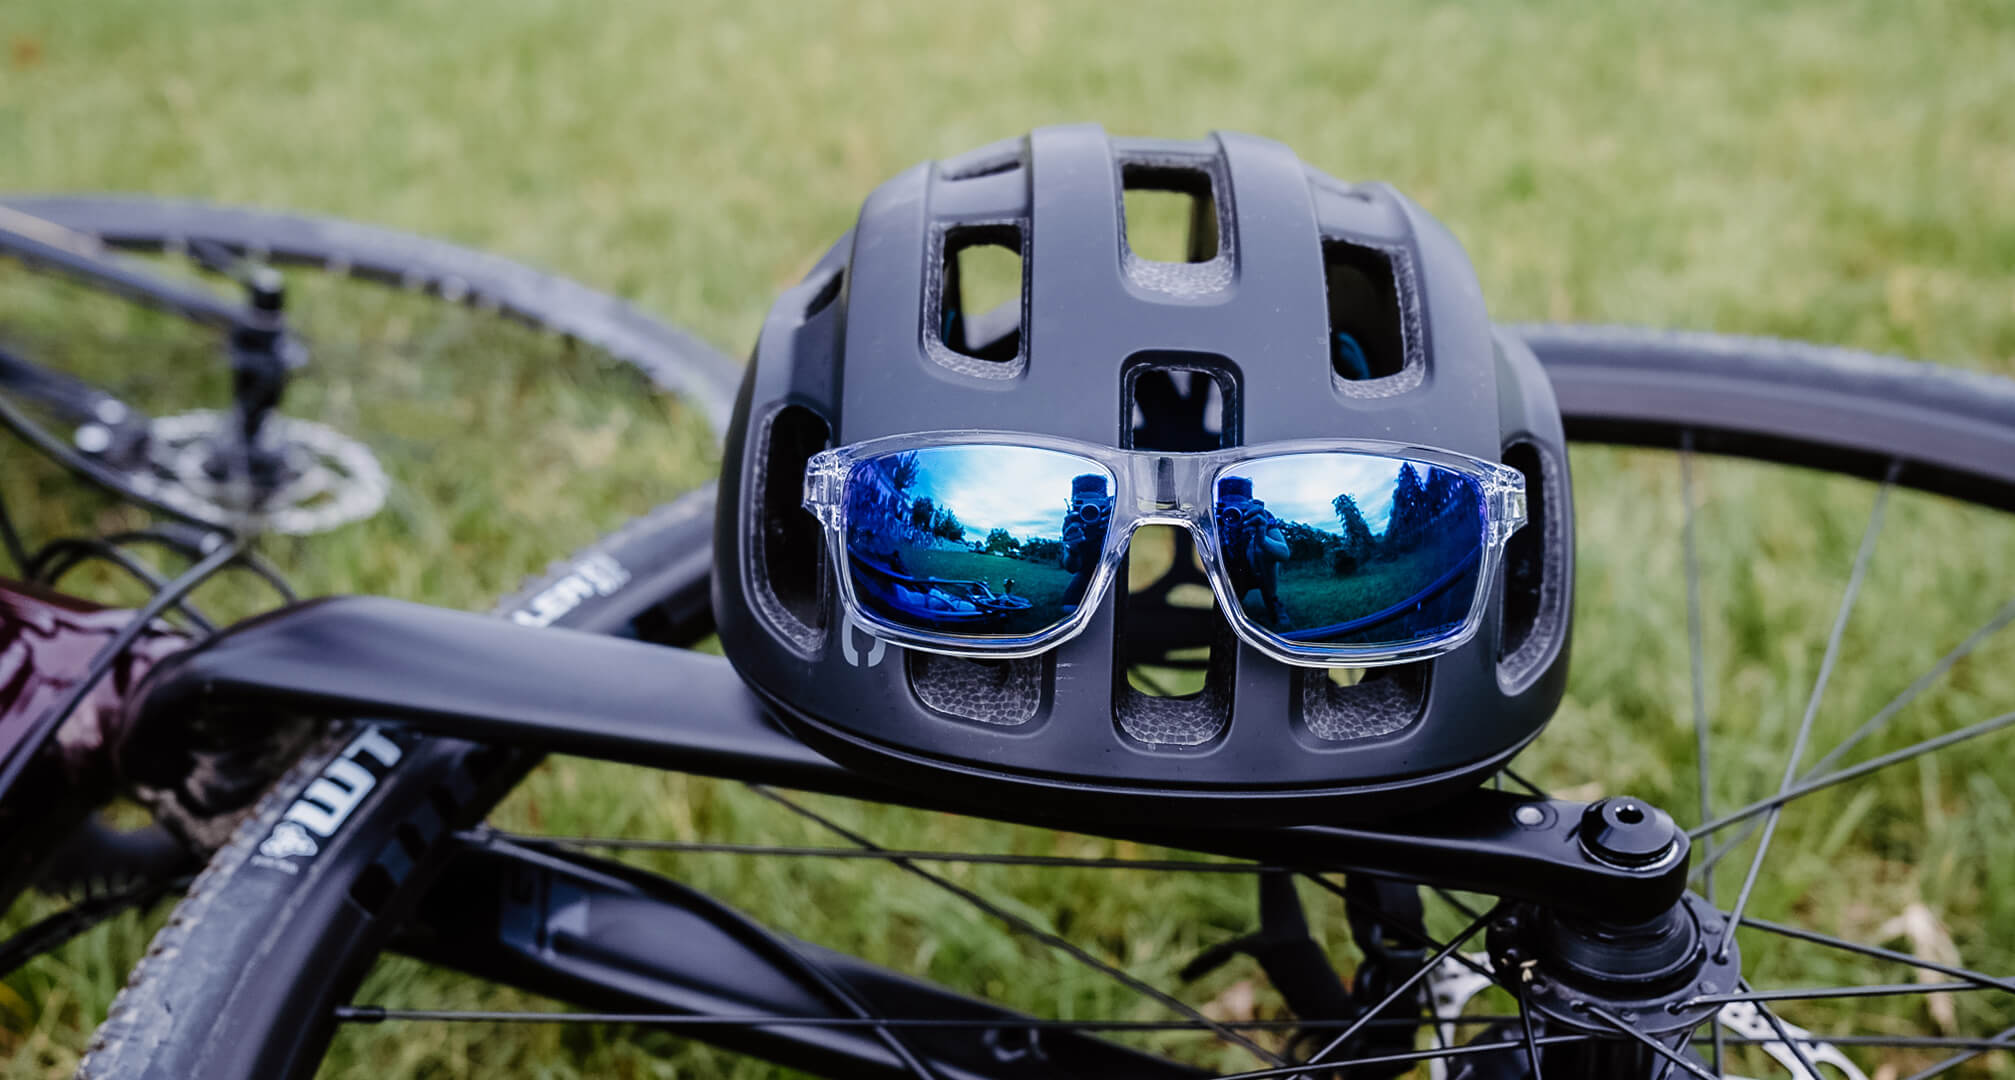 γυαλιά ηλίου με μπλέ καθρέφτη πάνω σε κράνος ποδηλάτου με ποδήλατο